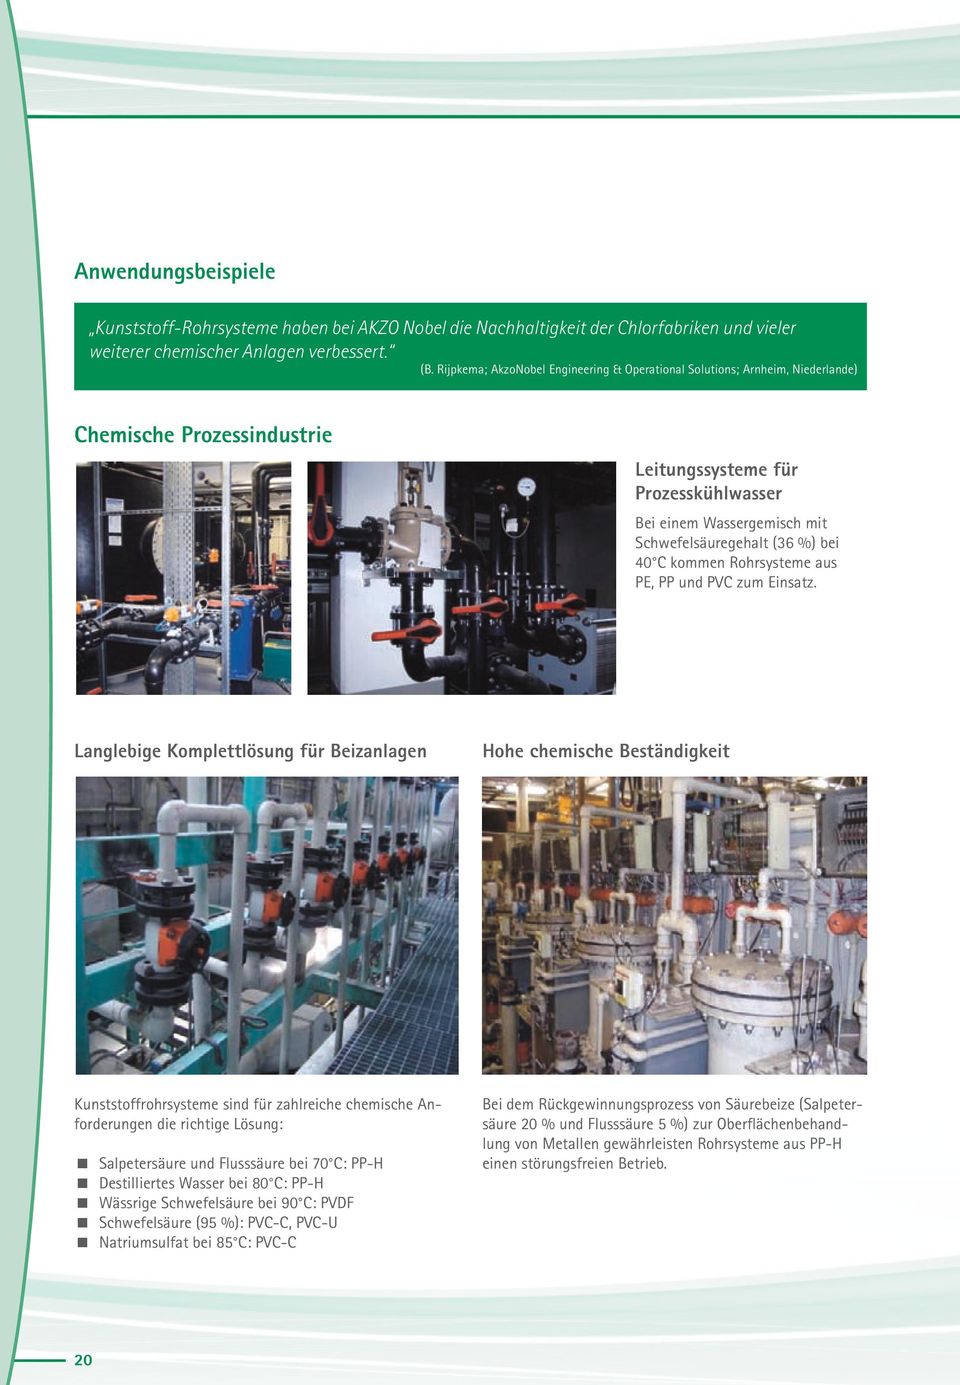 Rijpkema; AkzoNobel Engineering & Operational Solutions; Arnheim, Niederlande) ohrsysteme haben bei AKZO Nobel die Nachhaltigkeit der Chlorfabriken und vieler mischer Anlagen verbessert.